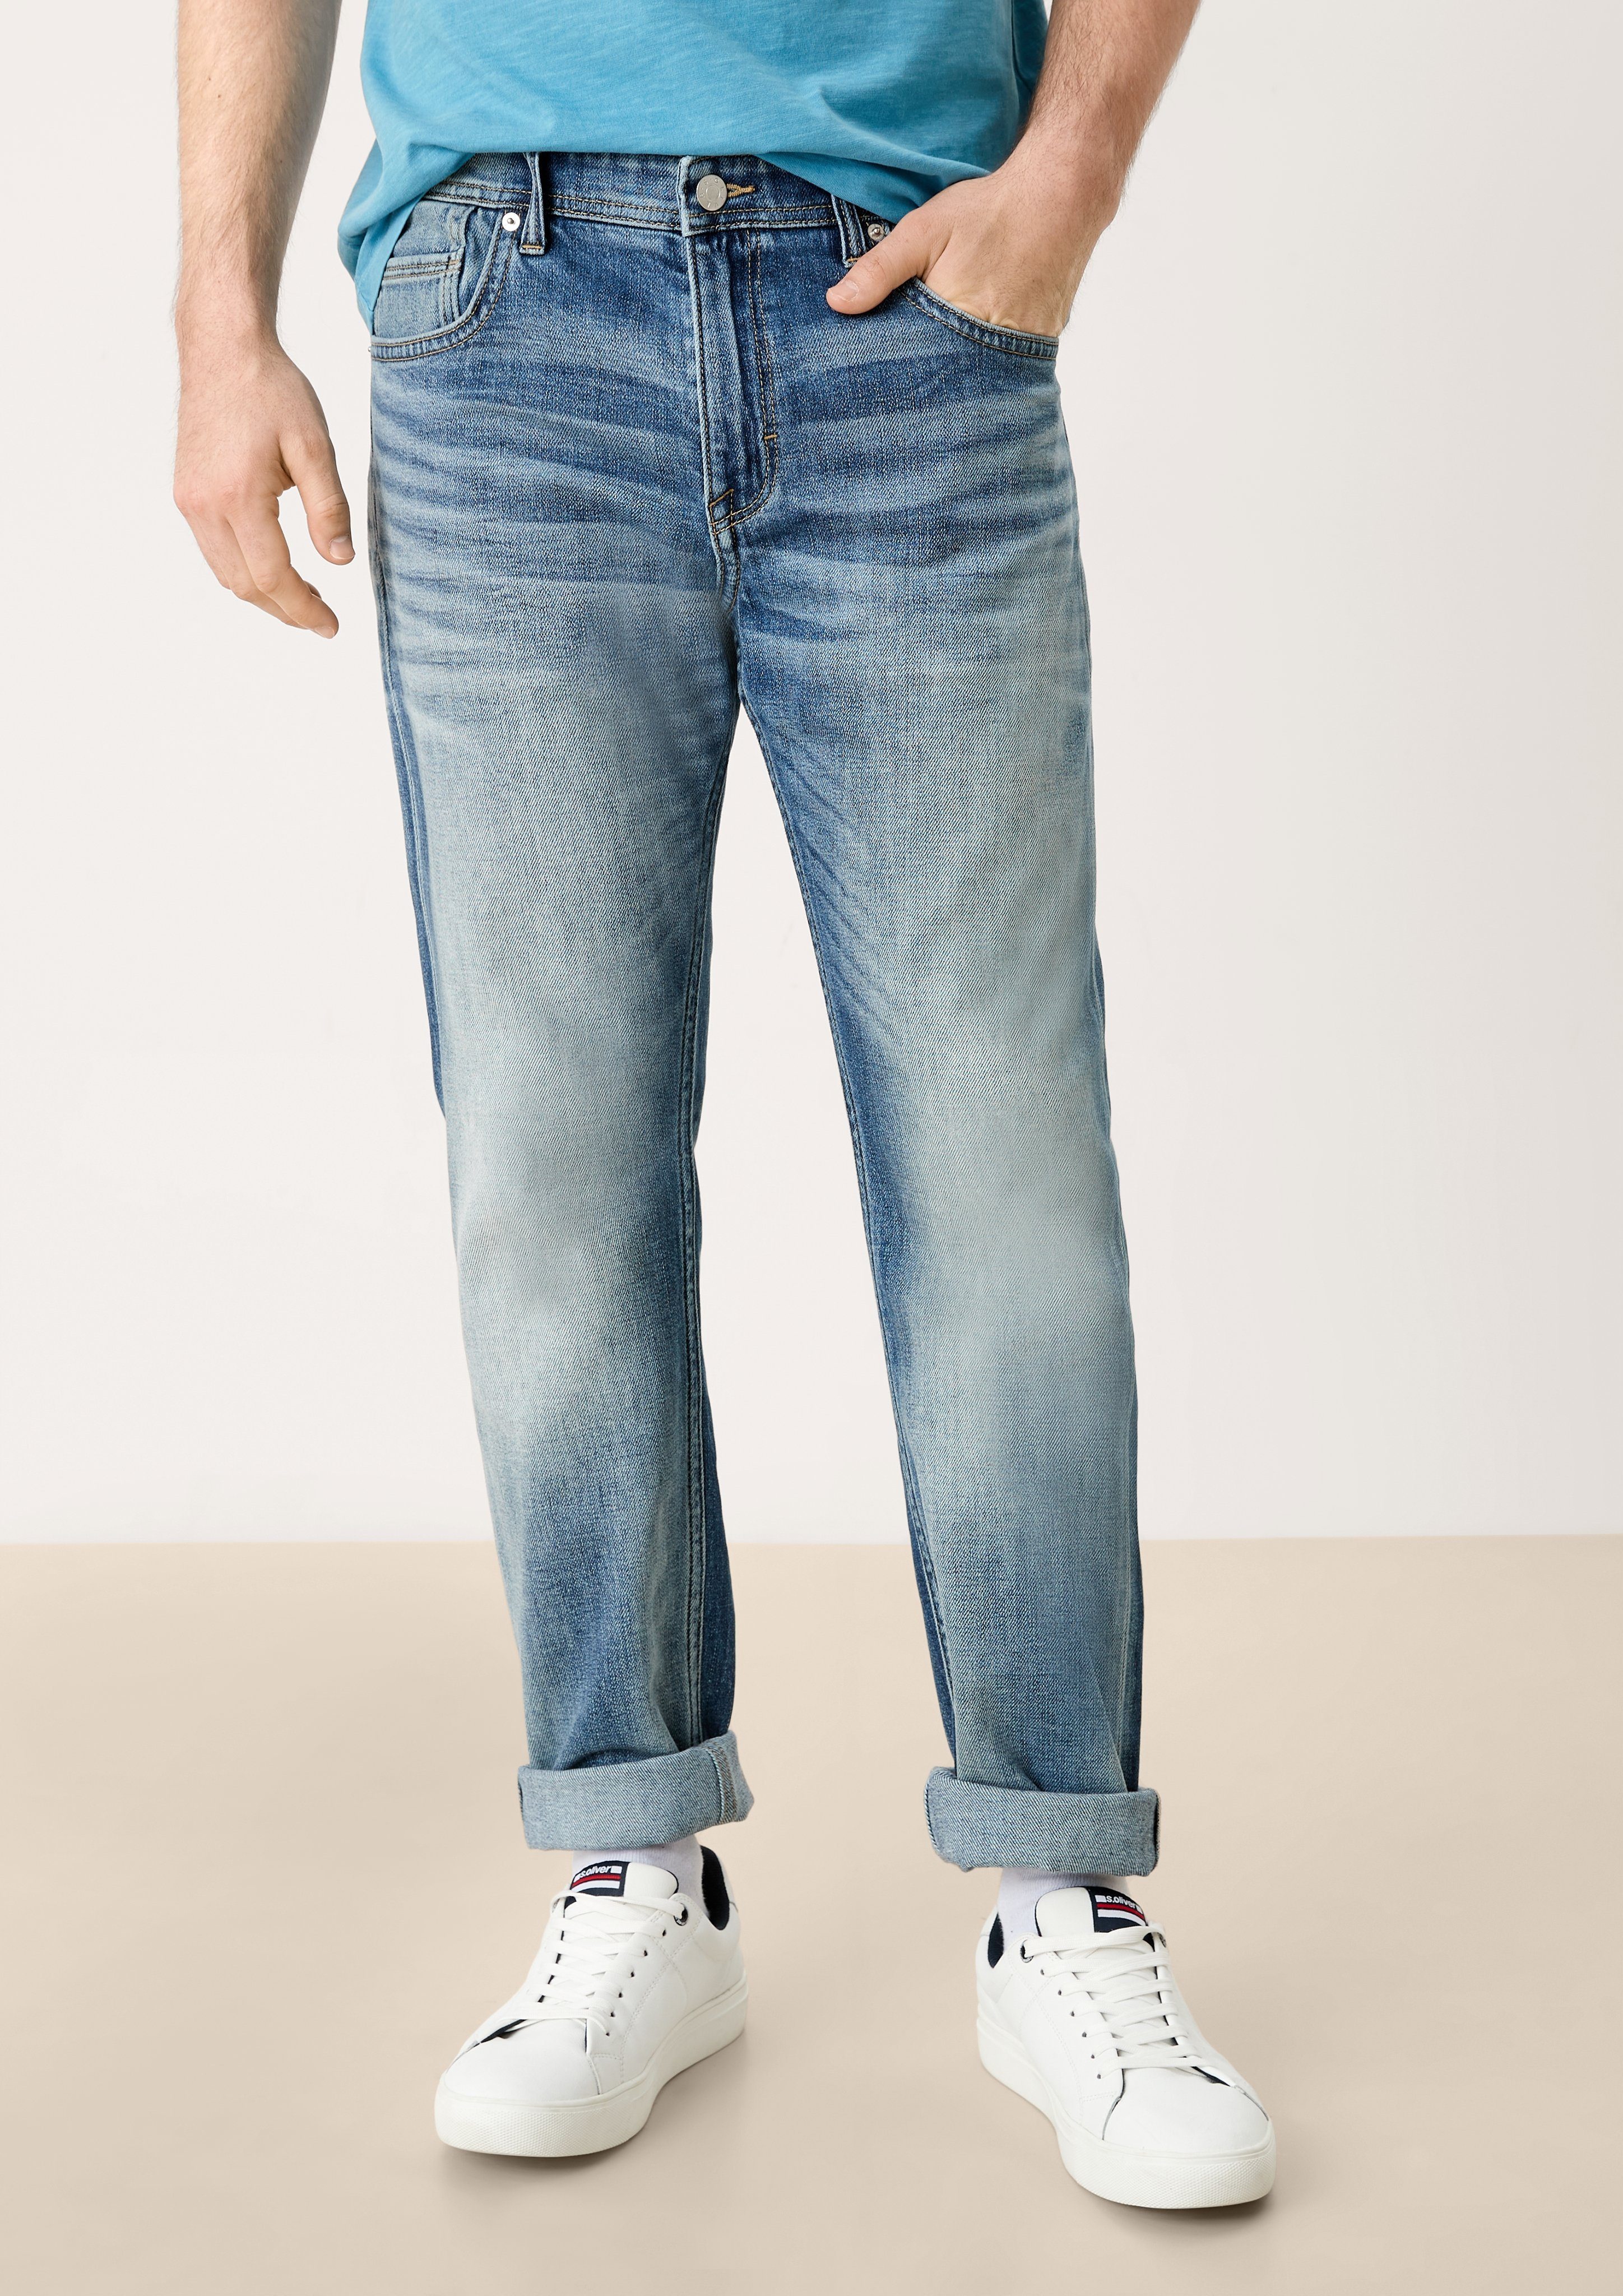 Herren Jeans s.Oliver 5-Pocket-Jeans Regular: Jeans mit Destroyes Waschung, Destroyes